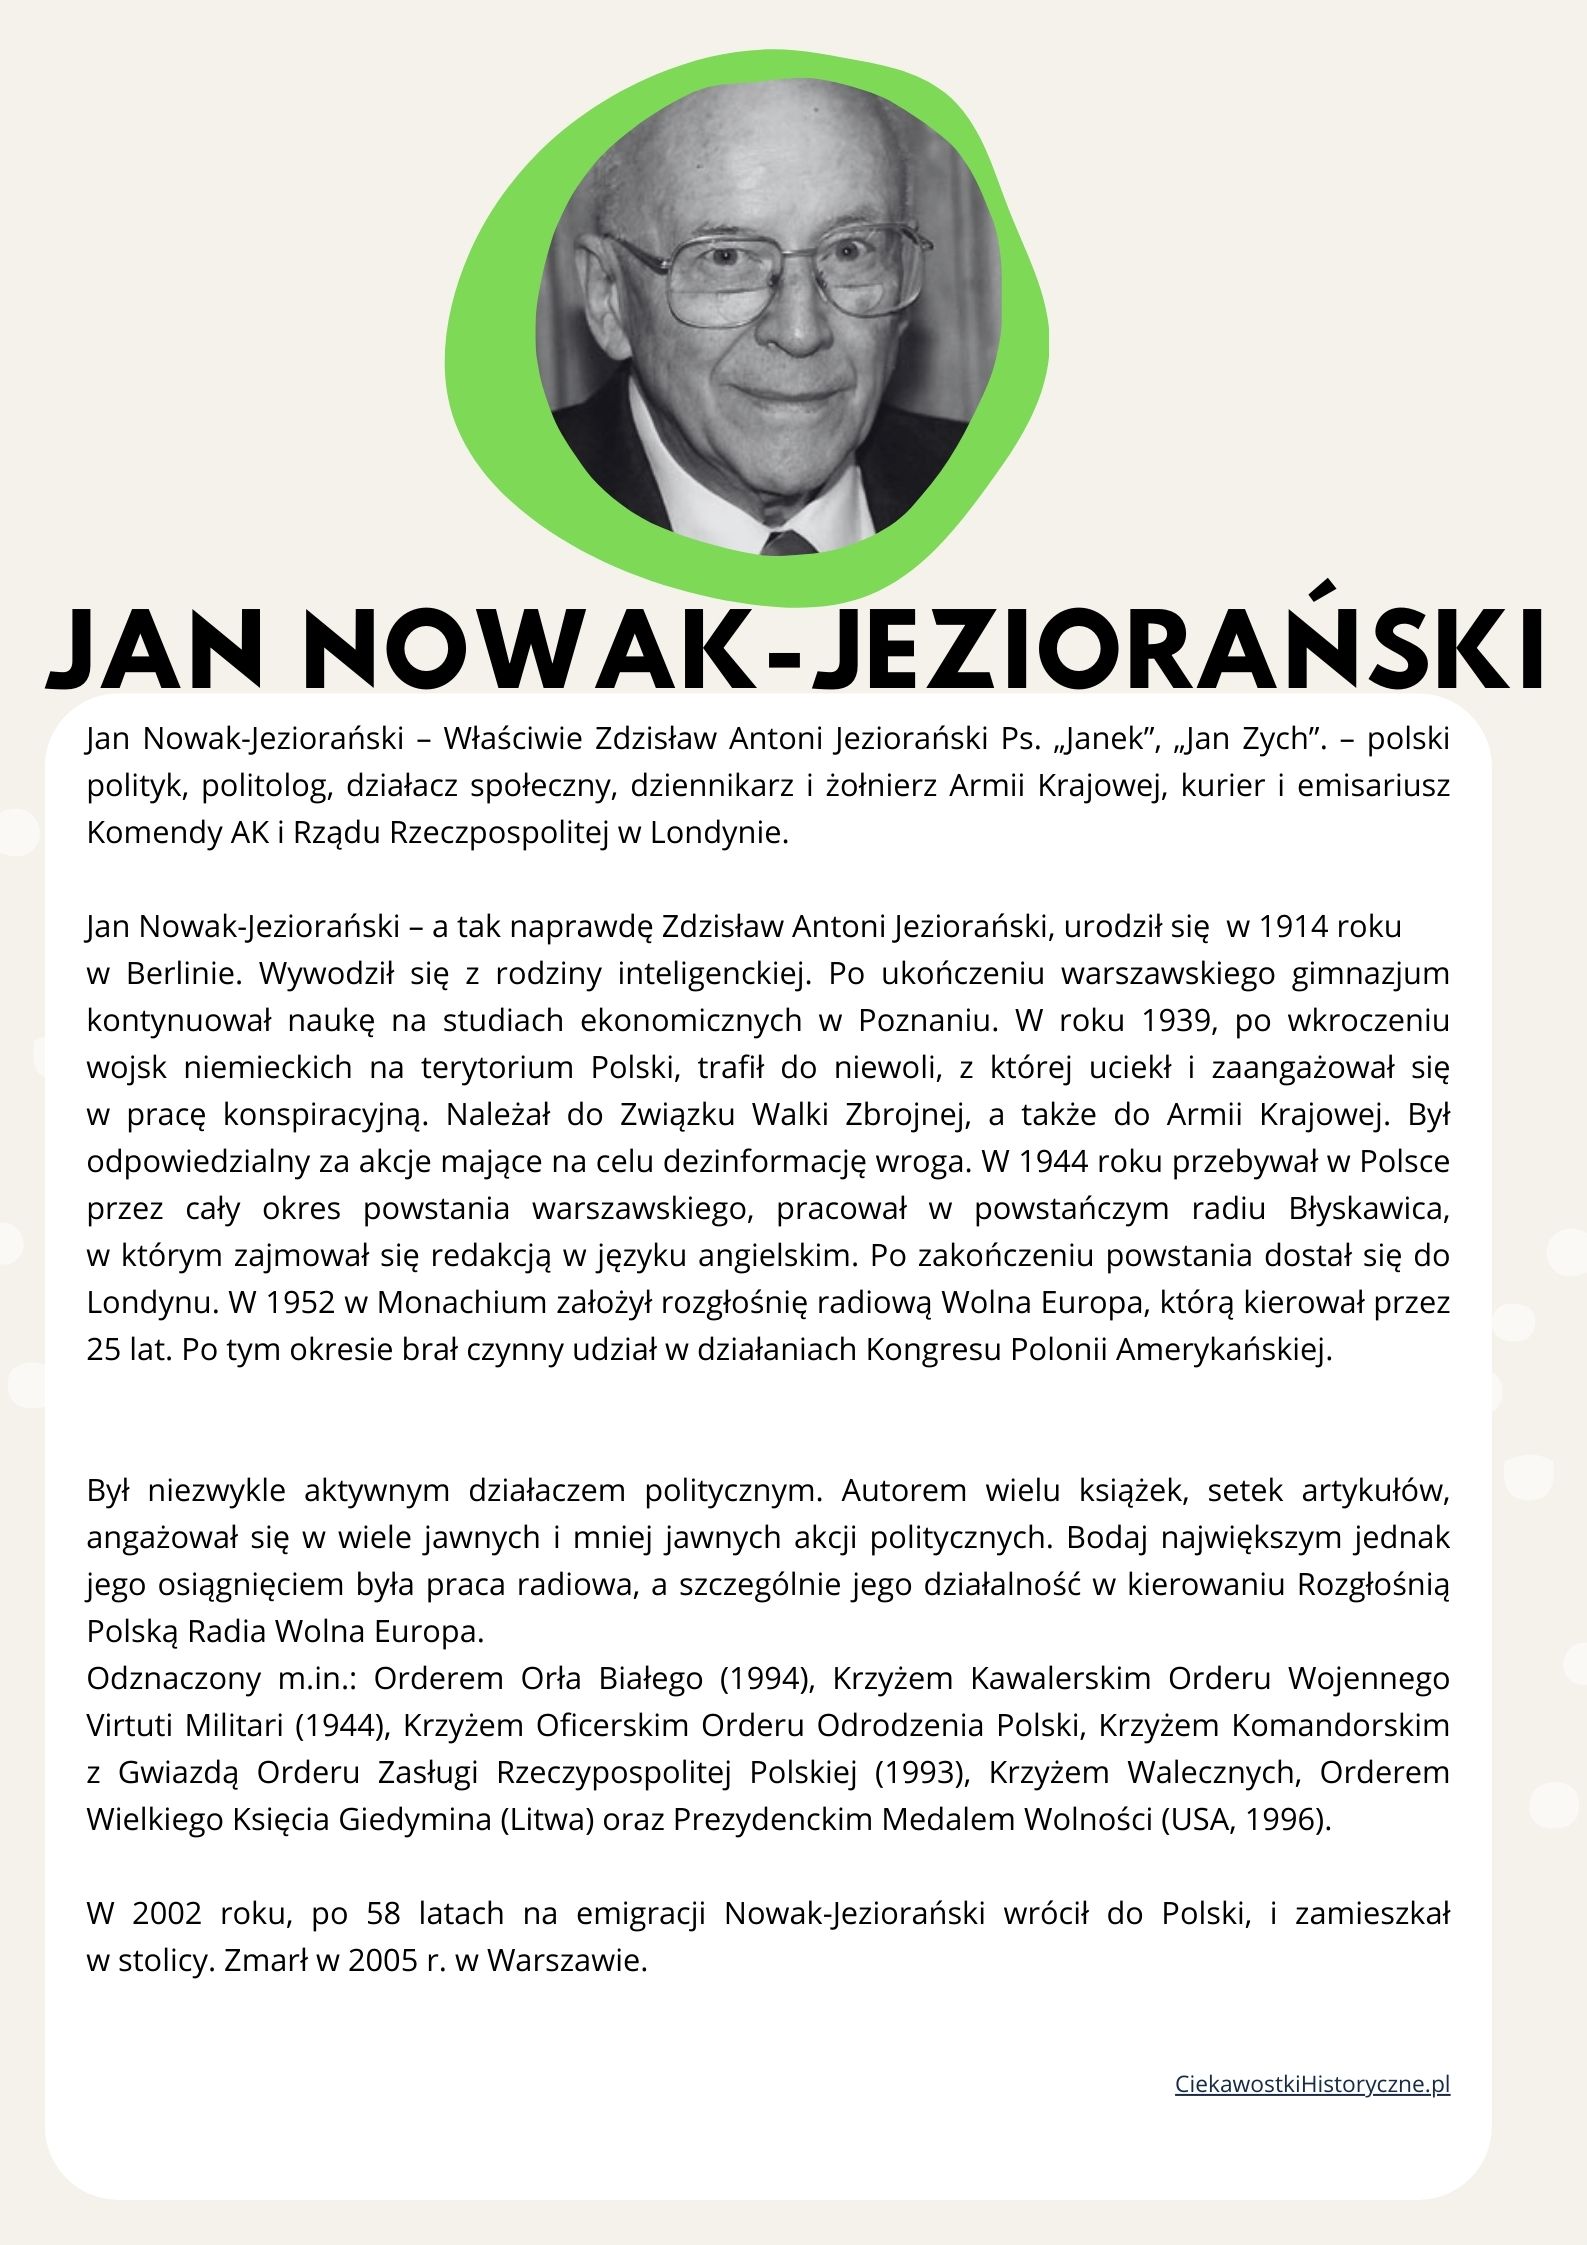 Jan Nowak-Jeziorański